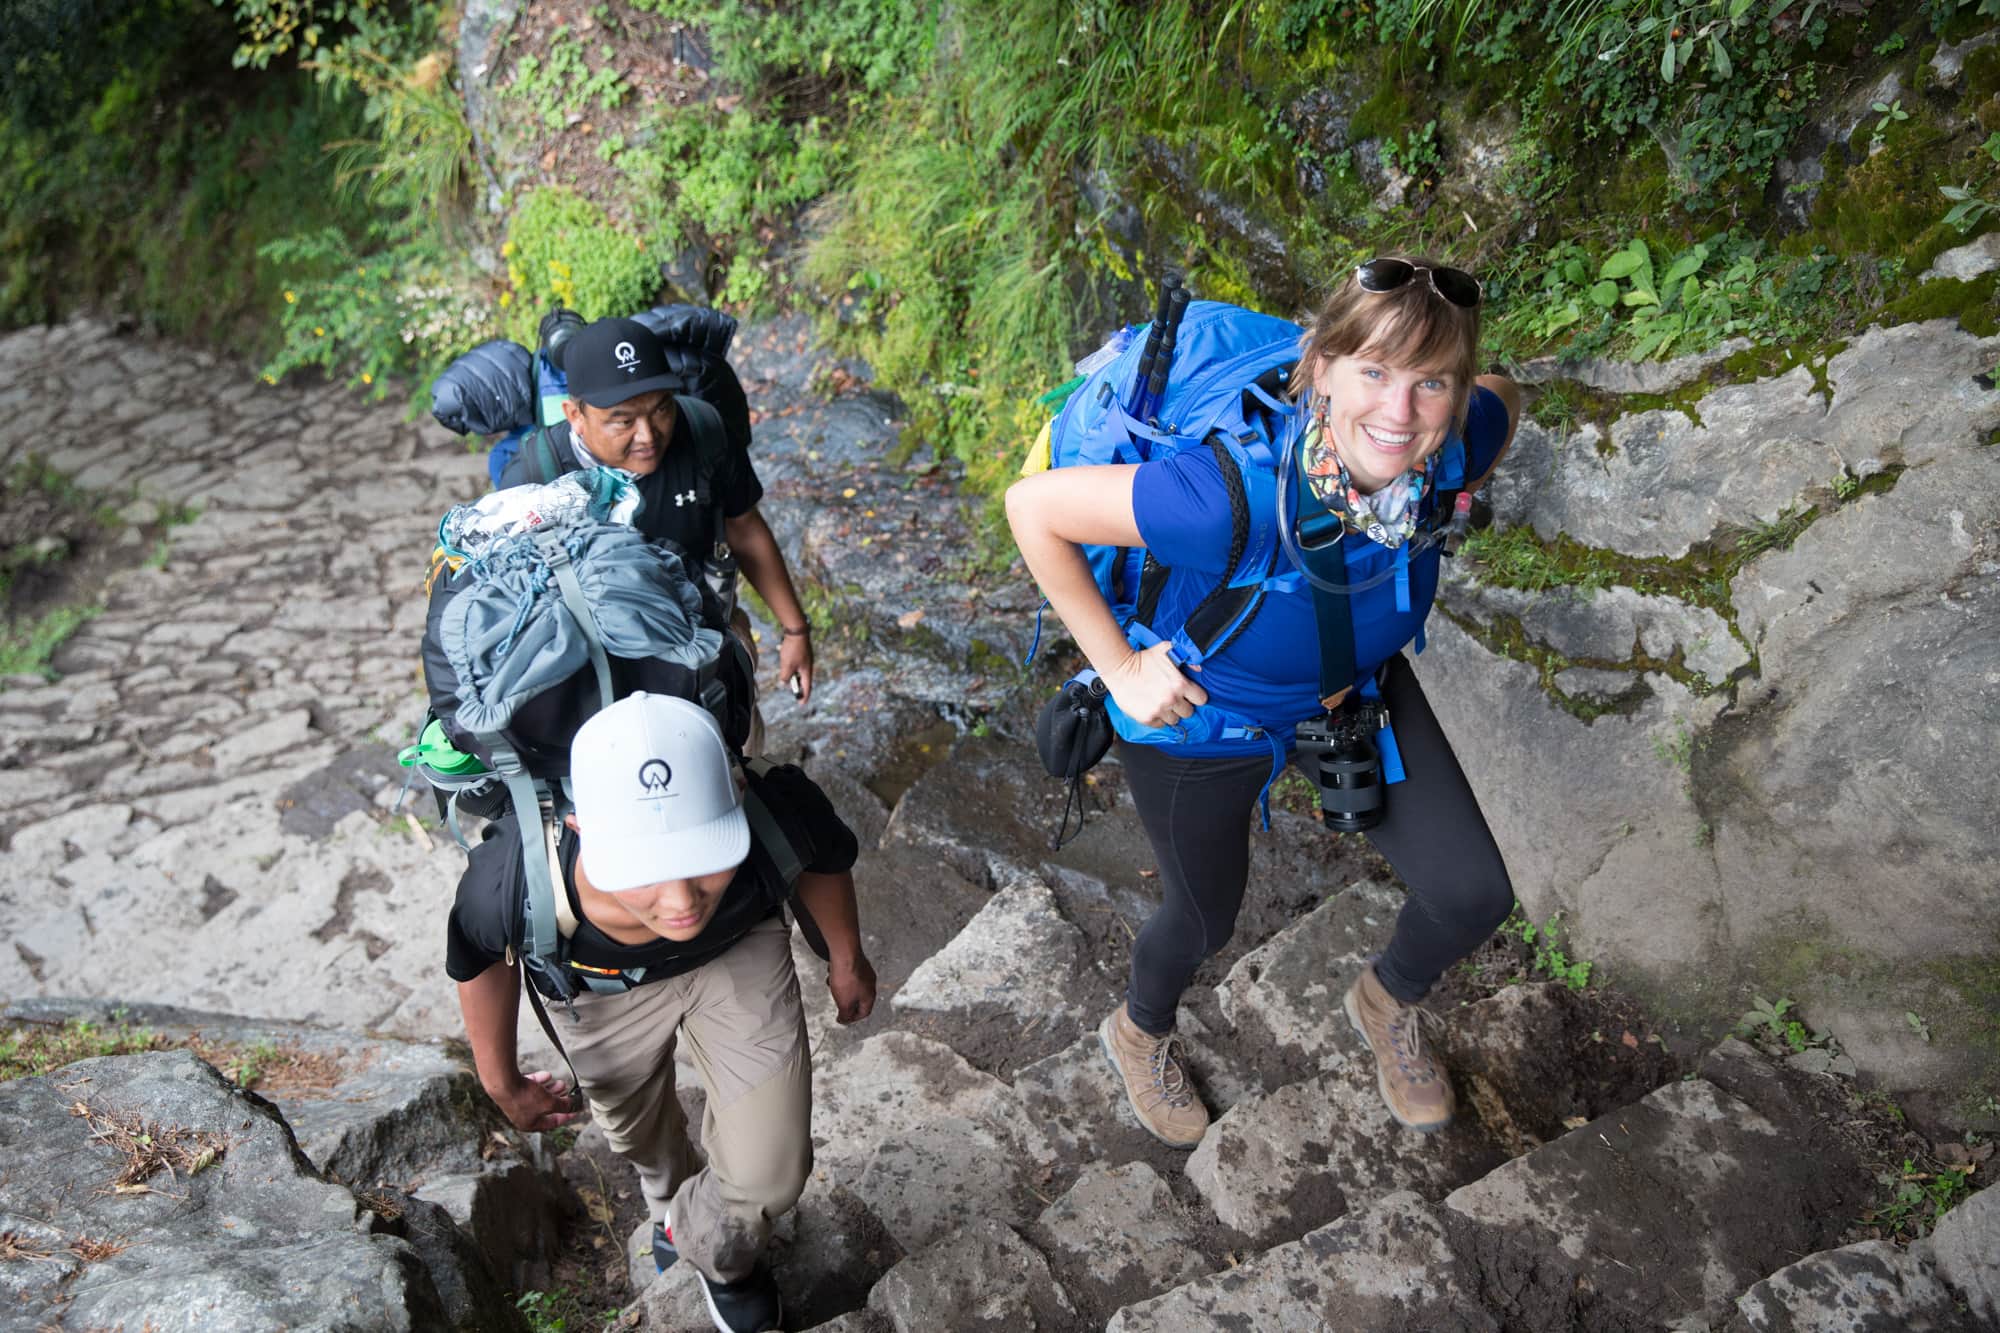 克里斯汀背着背包爬上陡峭的石阶。另外两个背着大背包的徒步旅行者在她身边徒步。